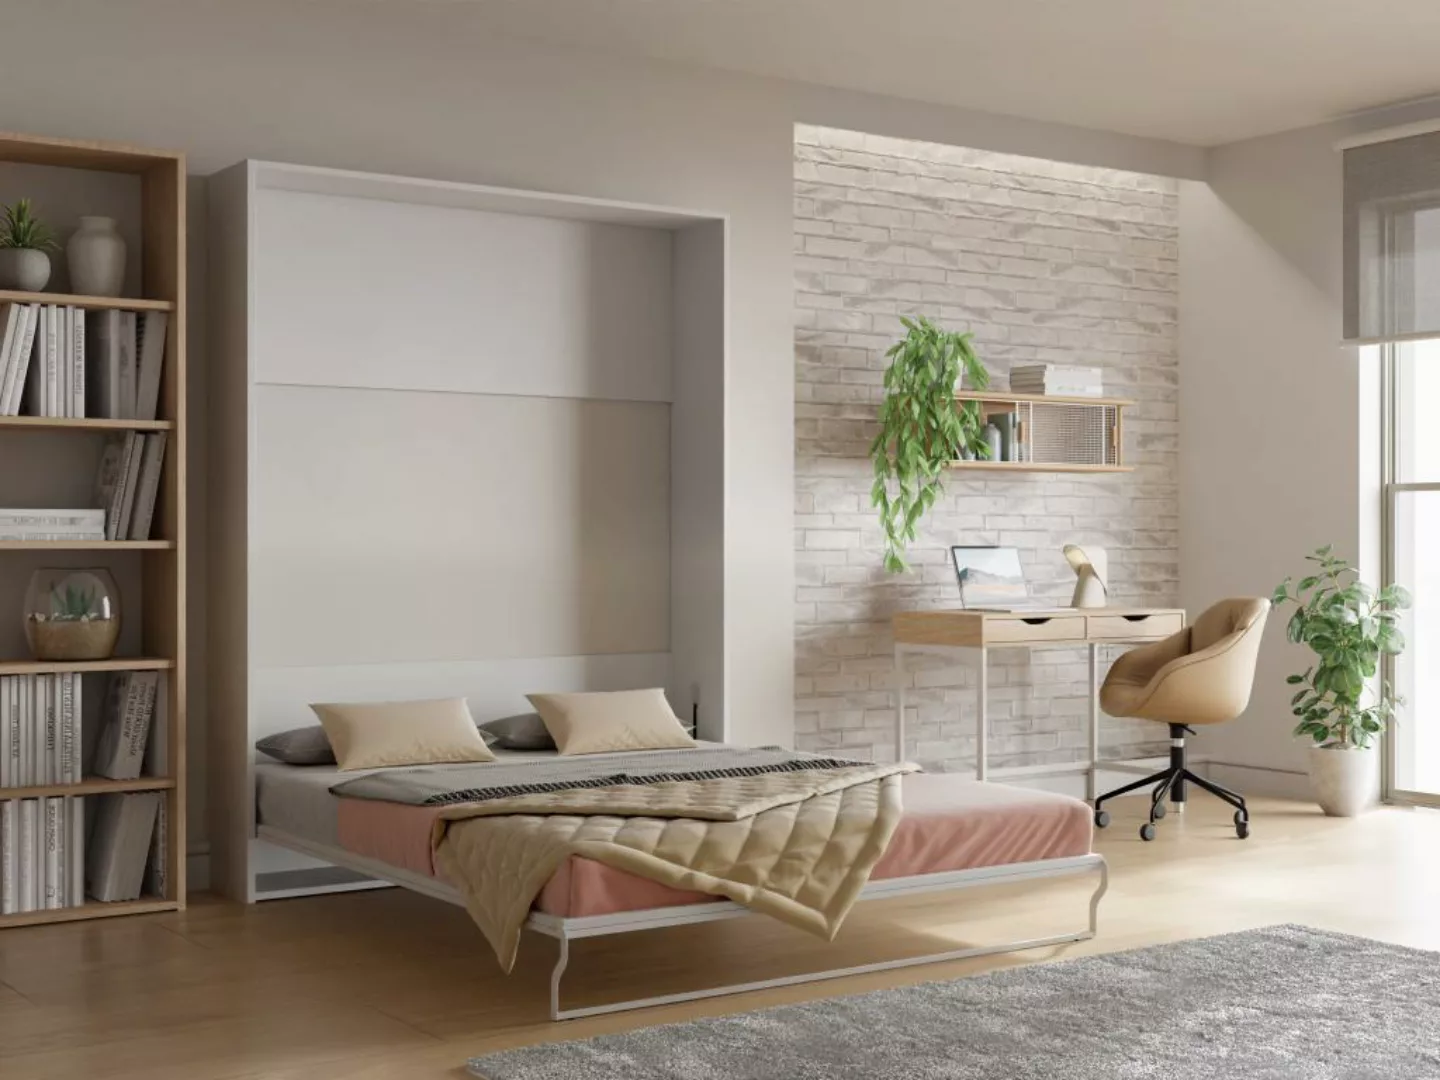 Schrankbett - 160 x 200 cm - Manuelle vertikale Öffnung - Weiß - MALINA II günstig online kaufen